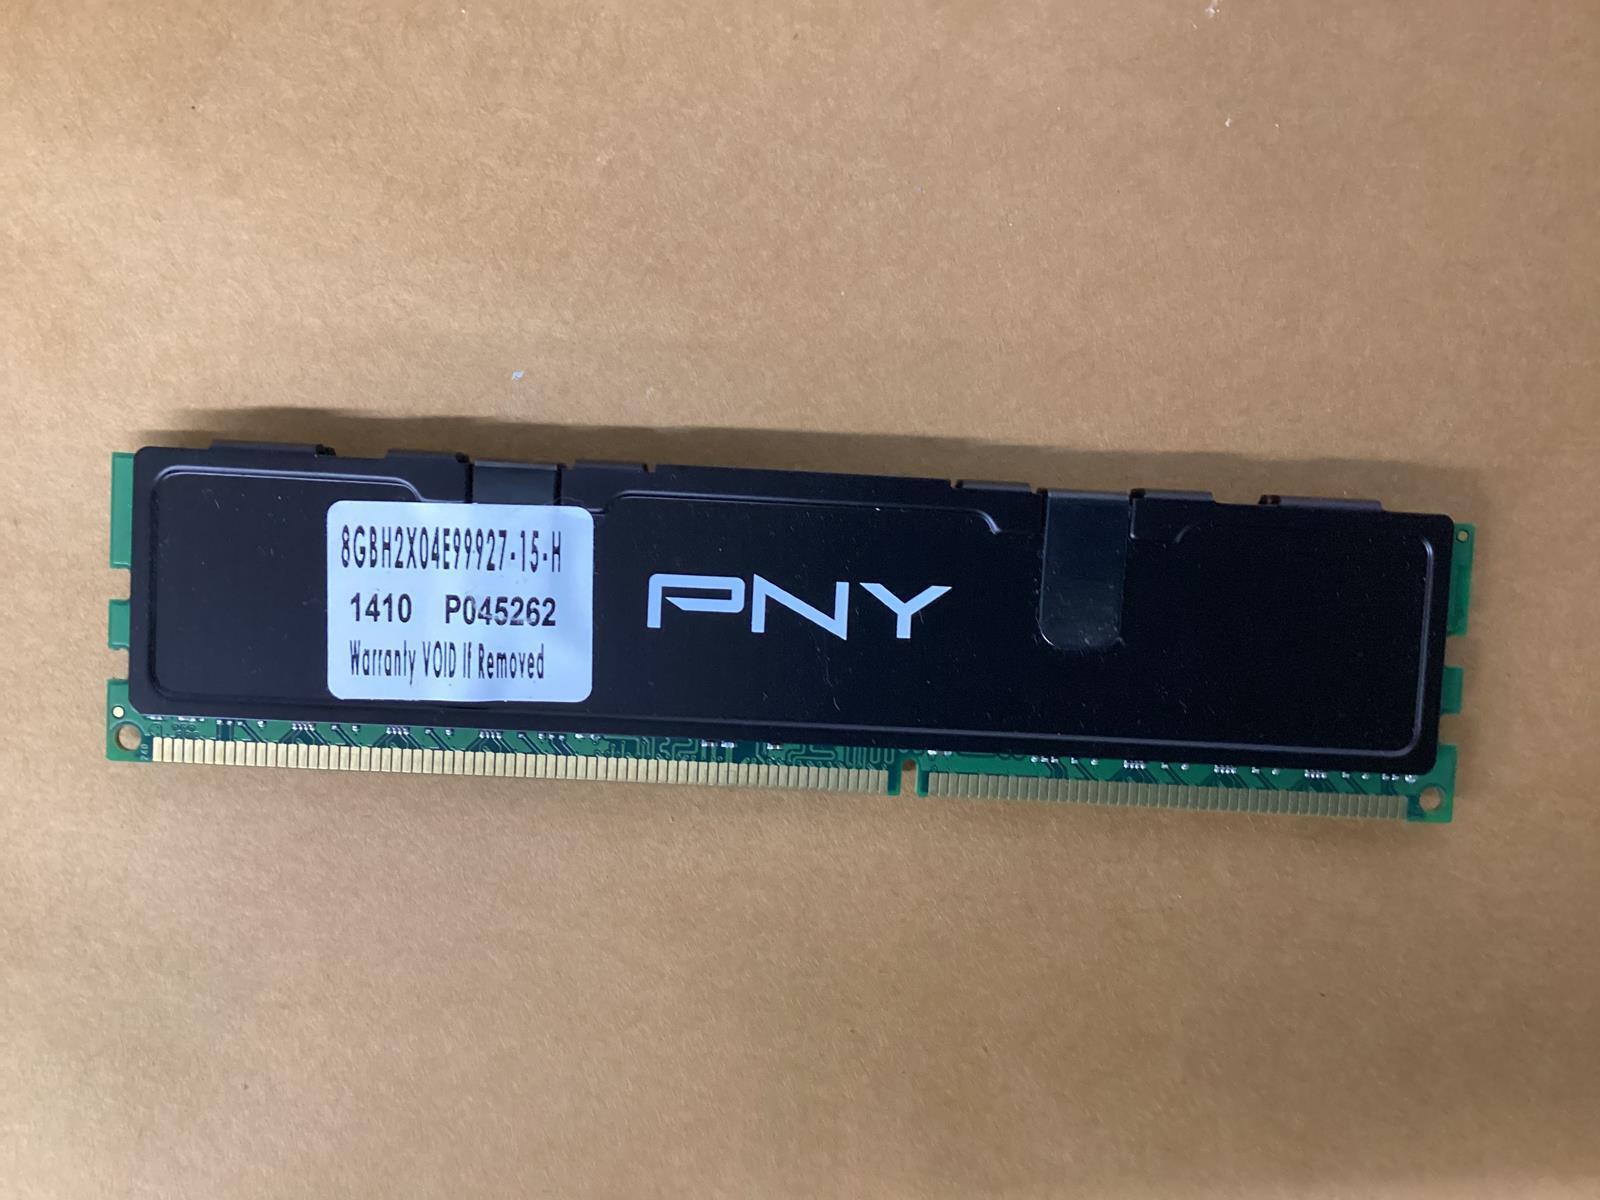 Pny Xlr8 8GB DDR3 Ram 2X04E99927-15-H